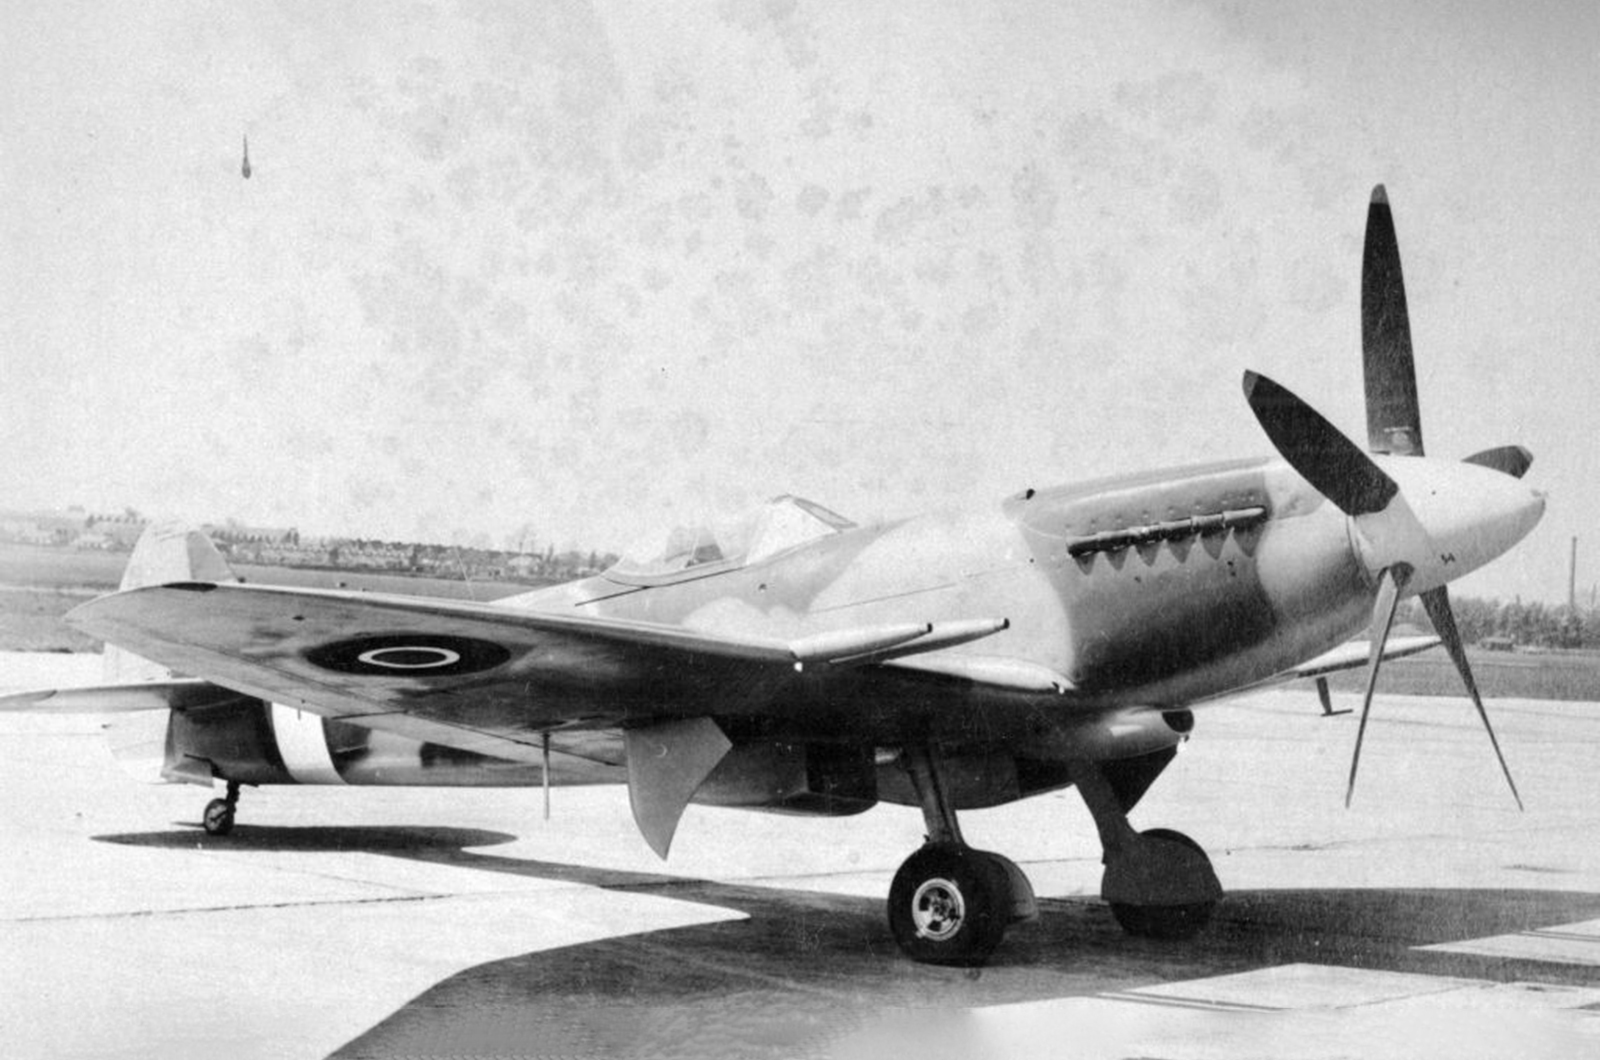 <p>Les derniers Spitfire étaient-ils vraiment des <strong>Spitfire </strong>? Vu le peu de traces laissées par le Mk I, on peut dire que non, mais c'étaient de formidables bêtes dans leur propre genre. Avec une cellule relativement petite, deux fois plus de puissance que le Spitfire original et une aile modernisée, le Spitfire est resté un chasseur de classe mondiale jusqu'à la fin de son développement.</p><p>Le '24 était presque identique au '22, à l'exception de petits détails comme la longueur du canon. Les marques 21, 22 et 24 étaient considérées par Supermarine comme une cellule commune, mais le 24 représentera le "Super Spitfire" pour notre liste. </p>